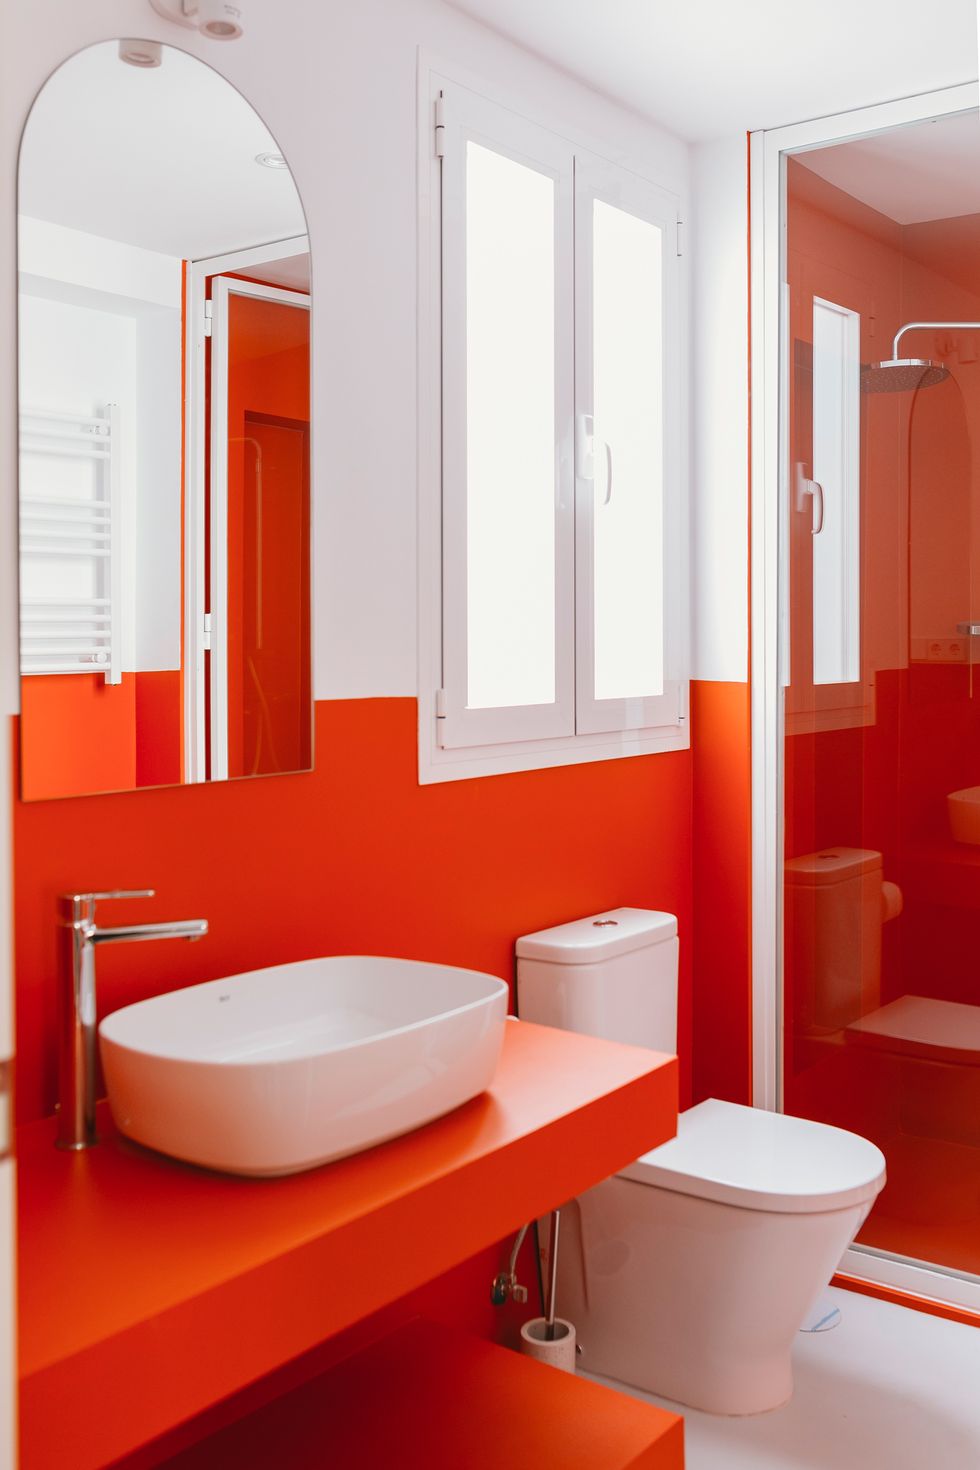 baño moderno con ducha de obra decorado en naranja intenso y blanco